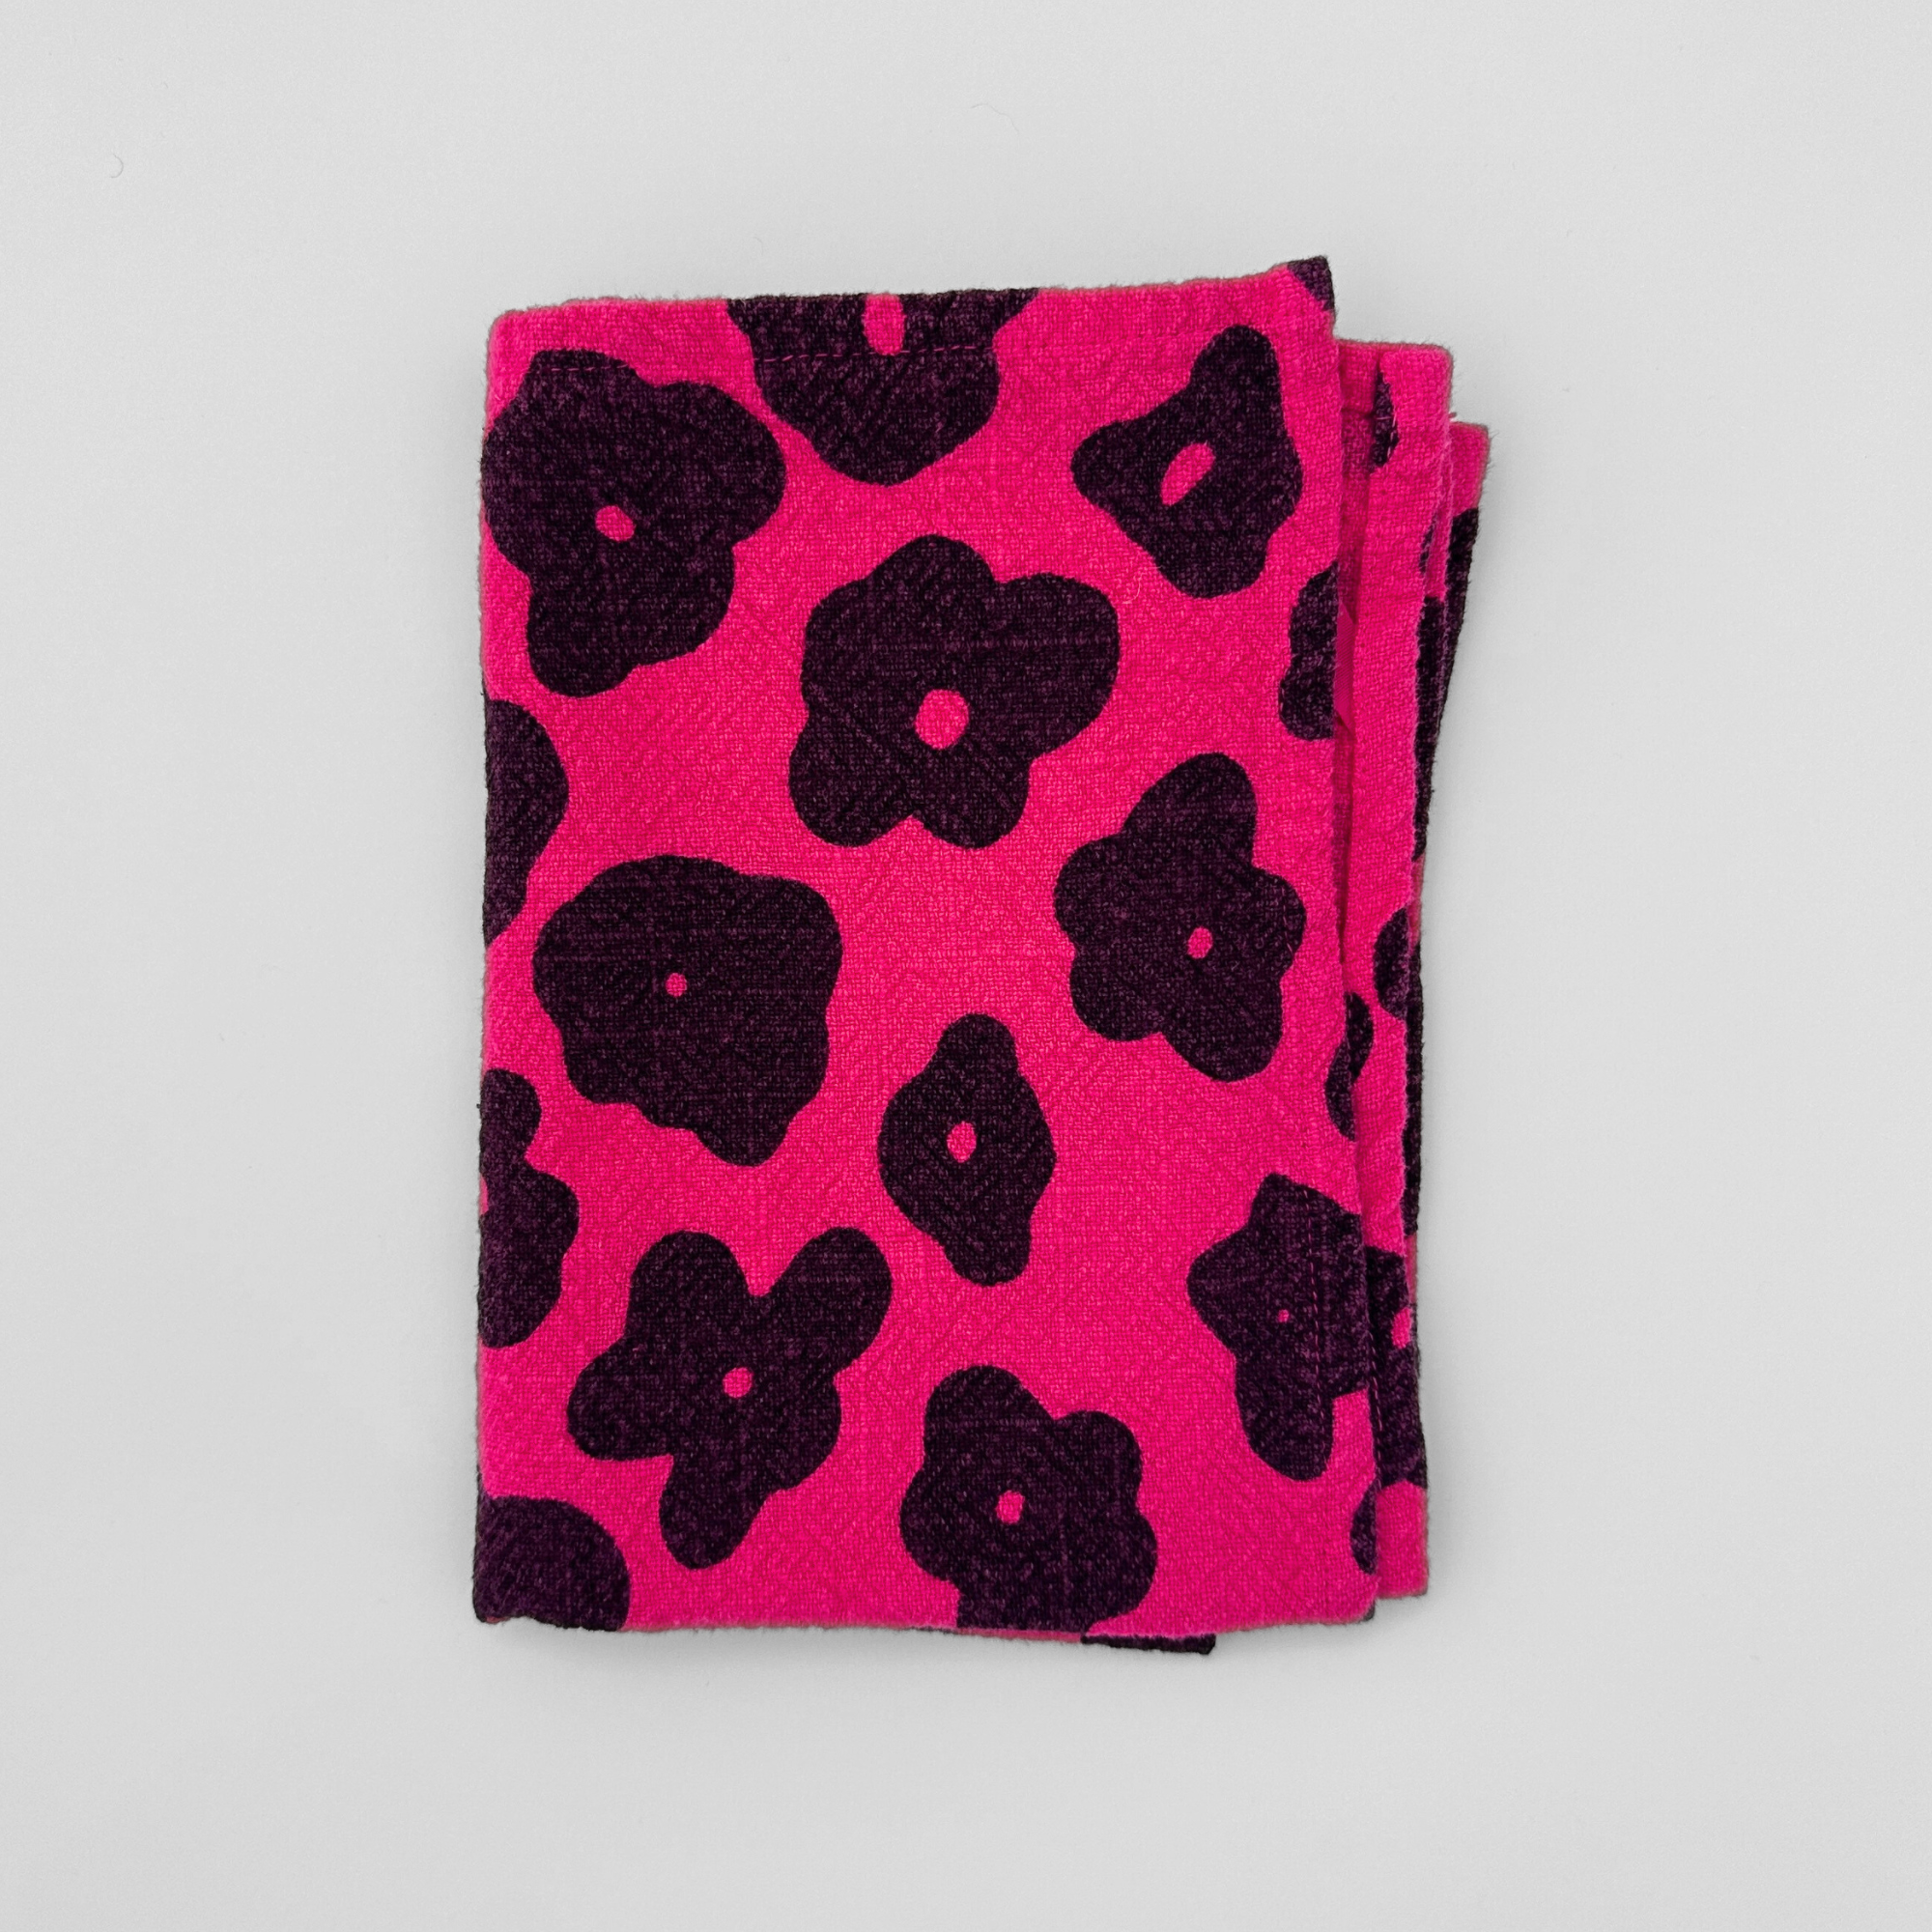 Tea Towel - Celeste - Faded Black - Hot Pink